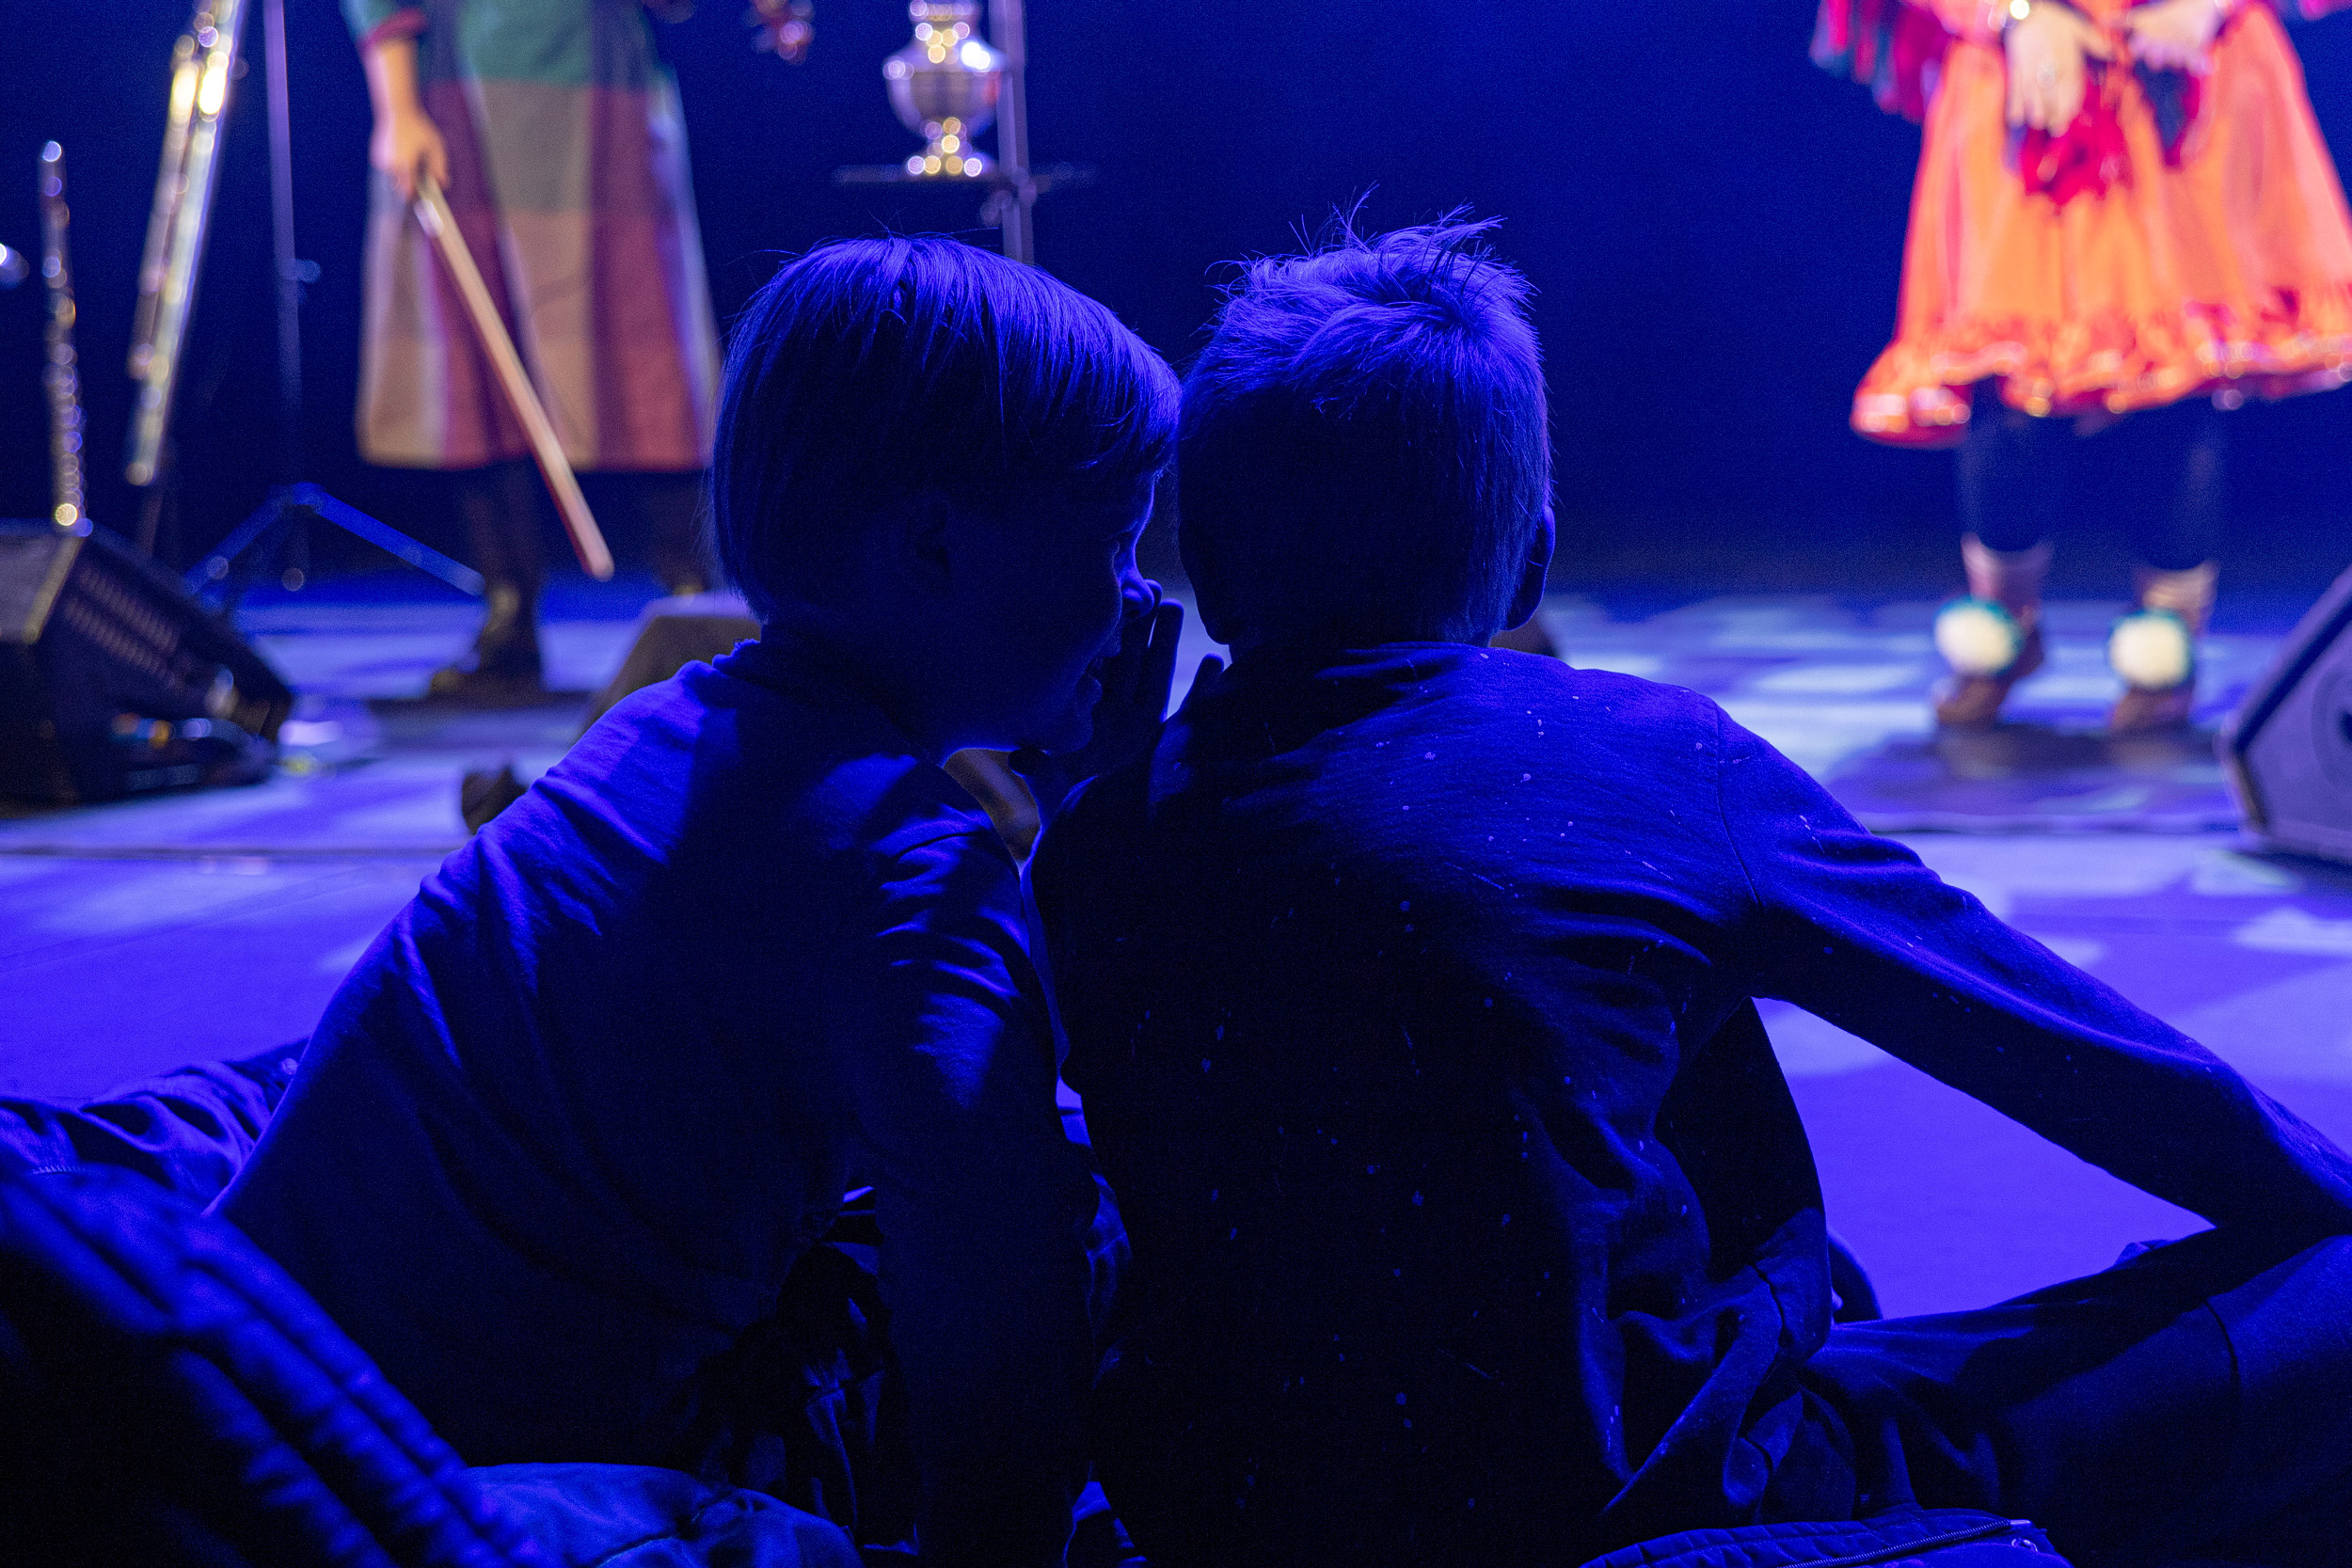 To gutter med ryggen til hvisker til hverandre foran en scene